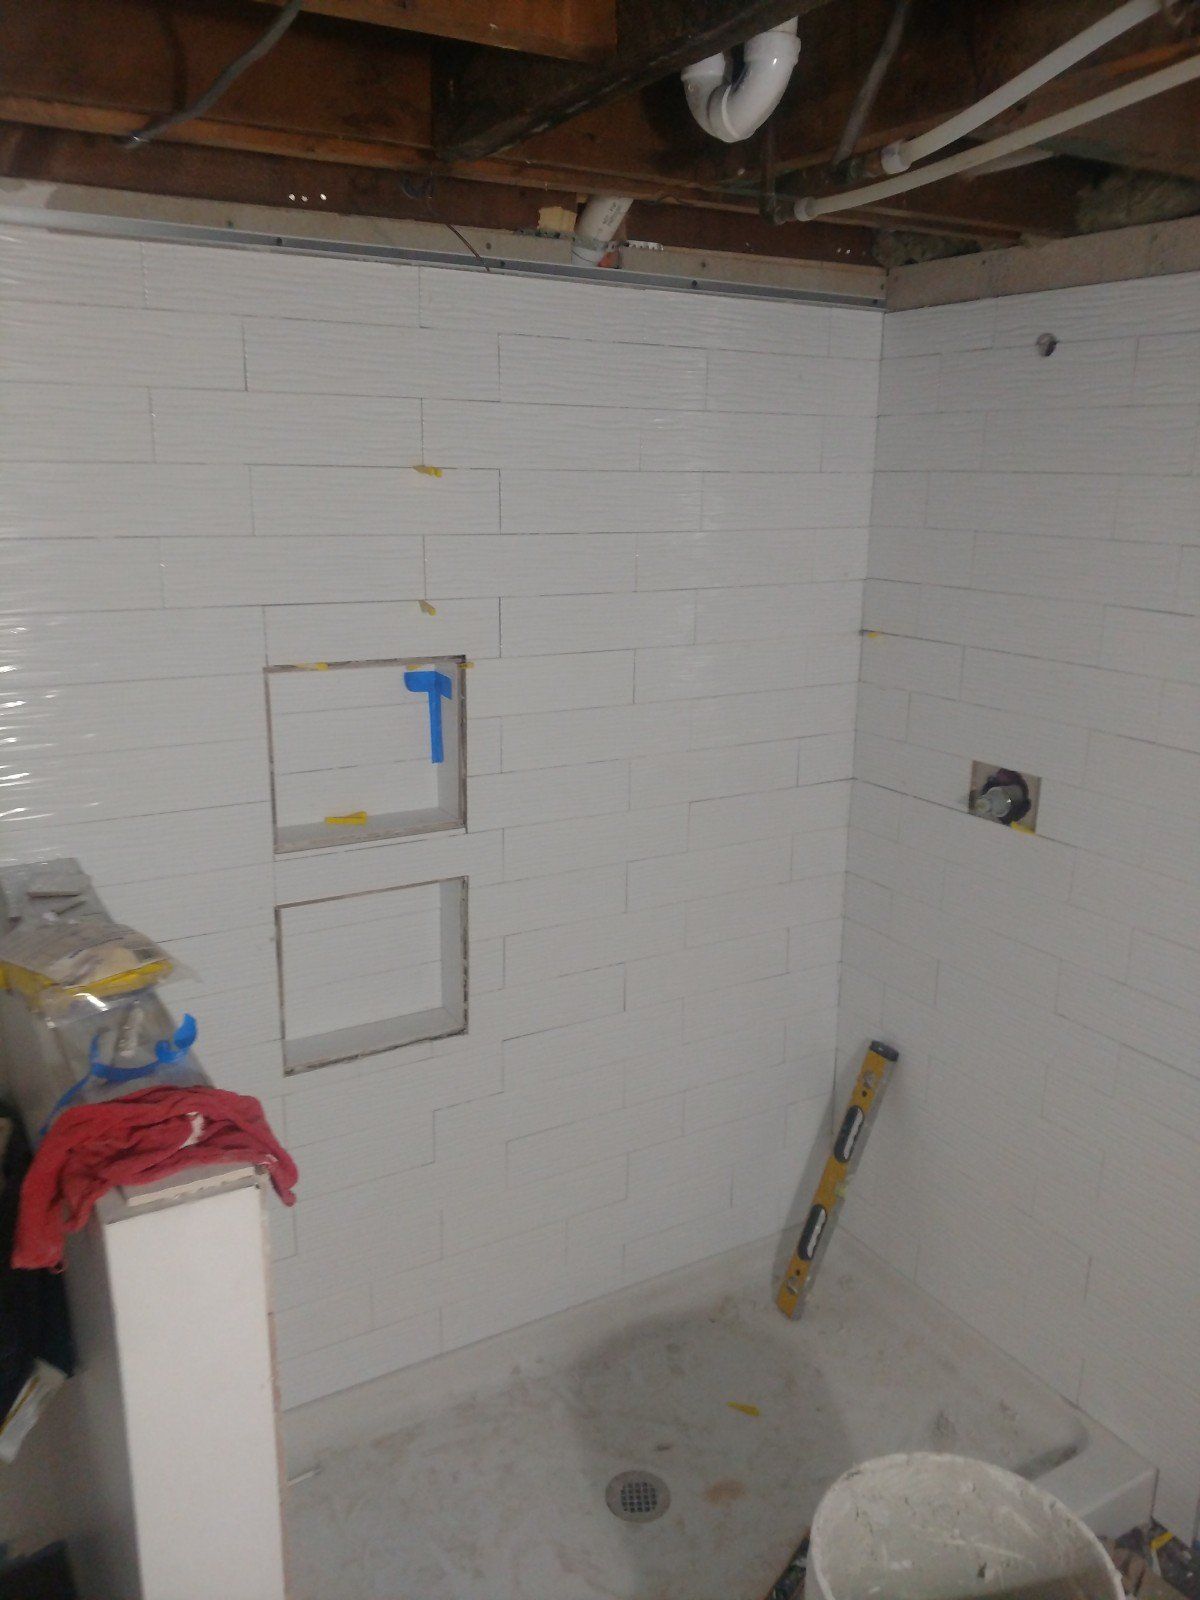 Comfort Room Renovation — Fixing Tiles of Comfort Room in Allenstown, NH